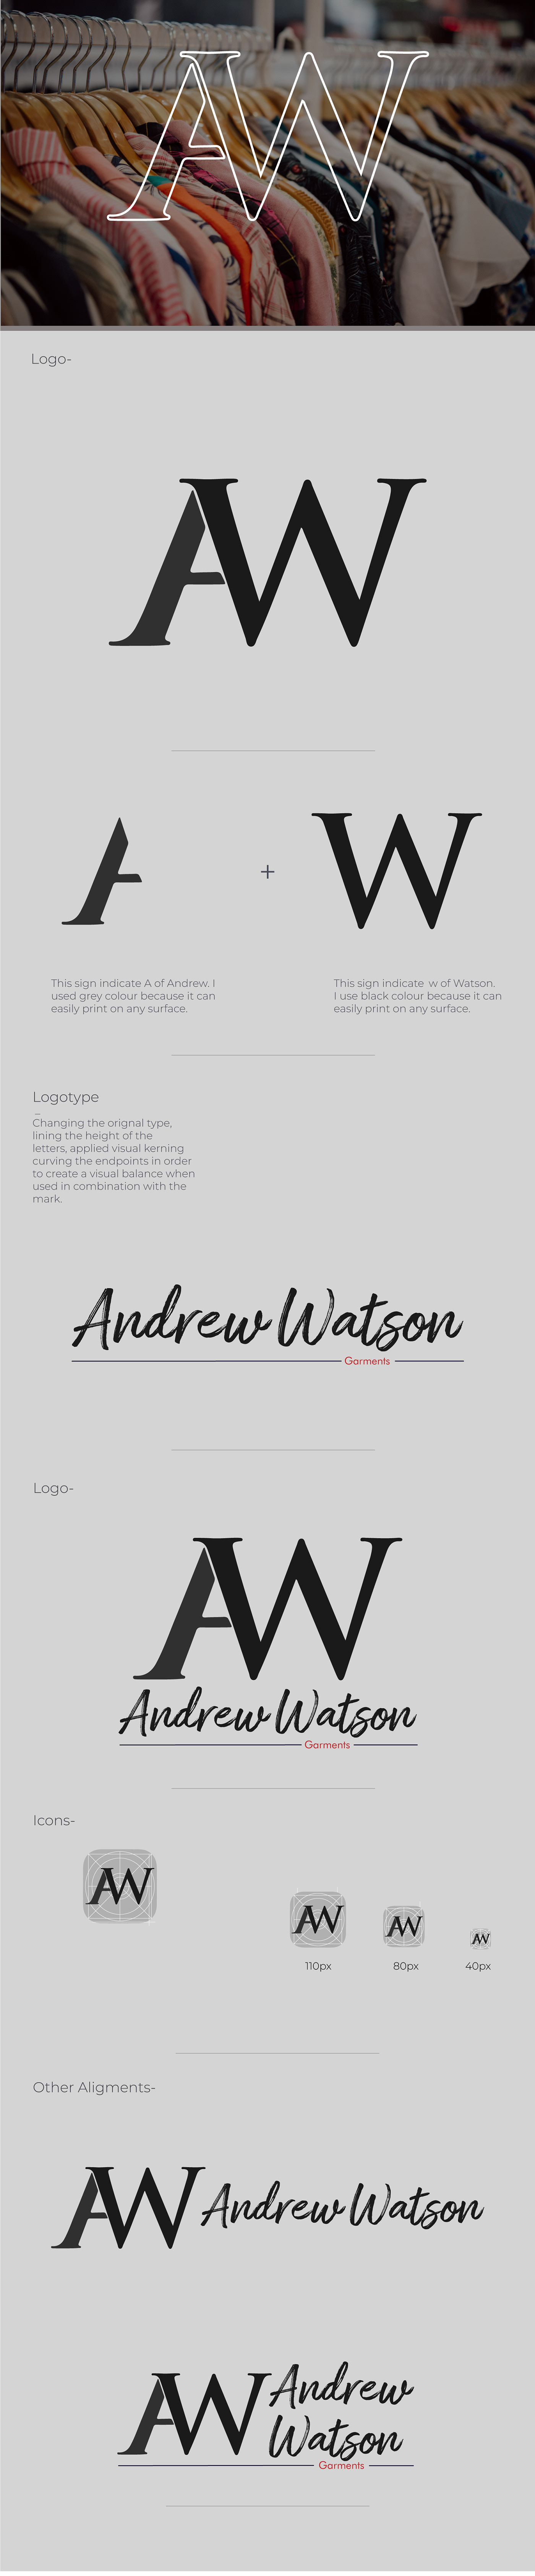 adobe illustrator brand identity branding  Digital Art  identity logo Logo Design Logotype typography   visual identity